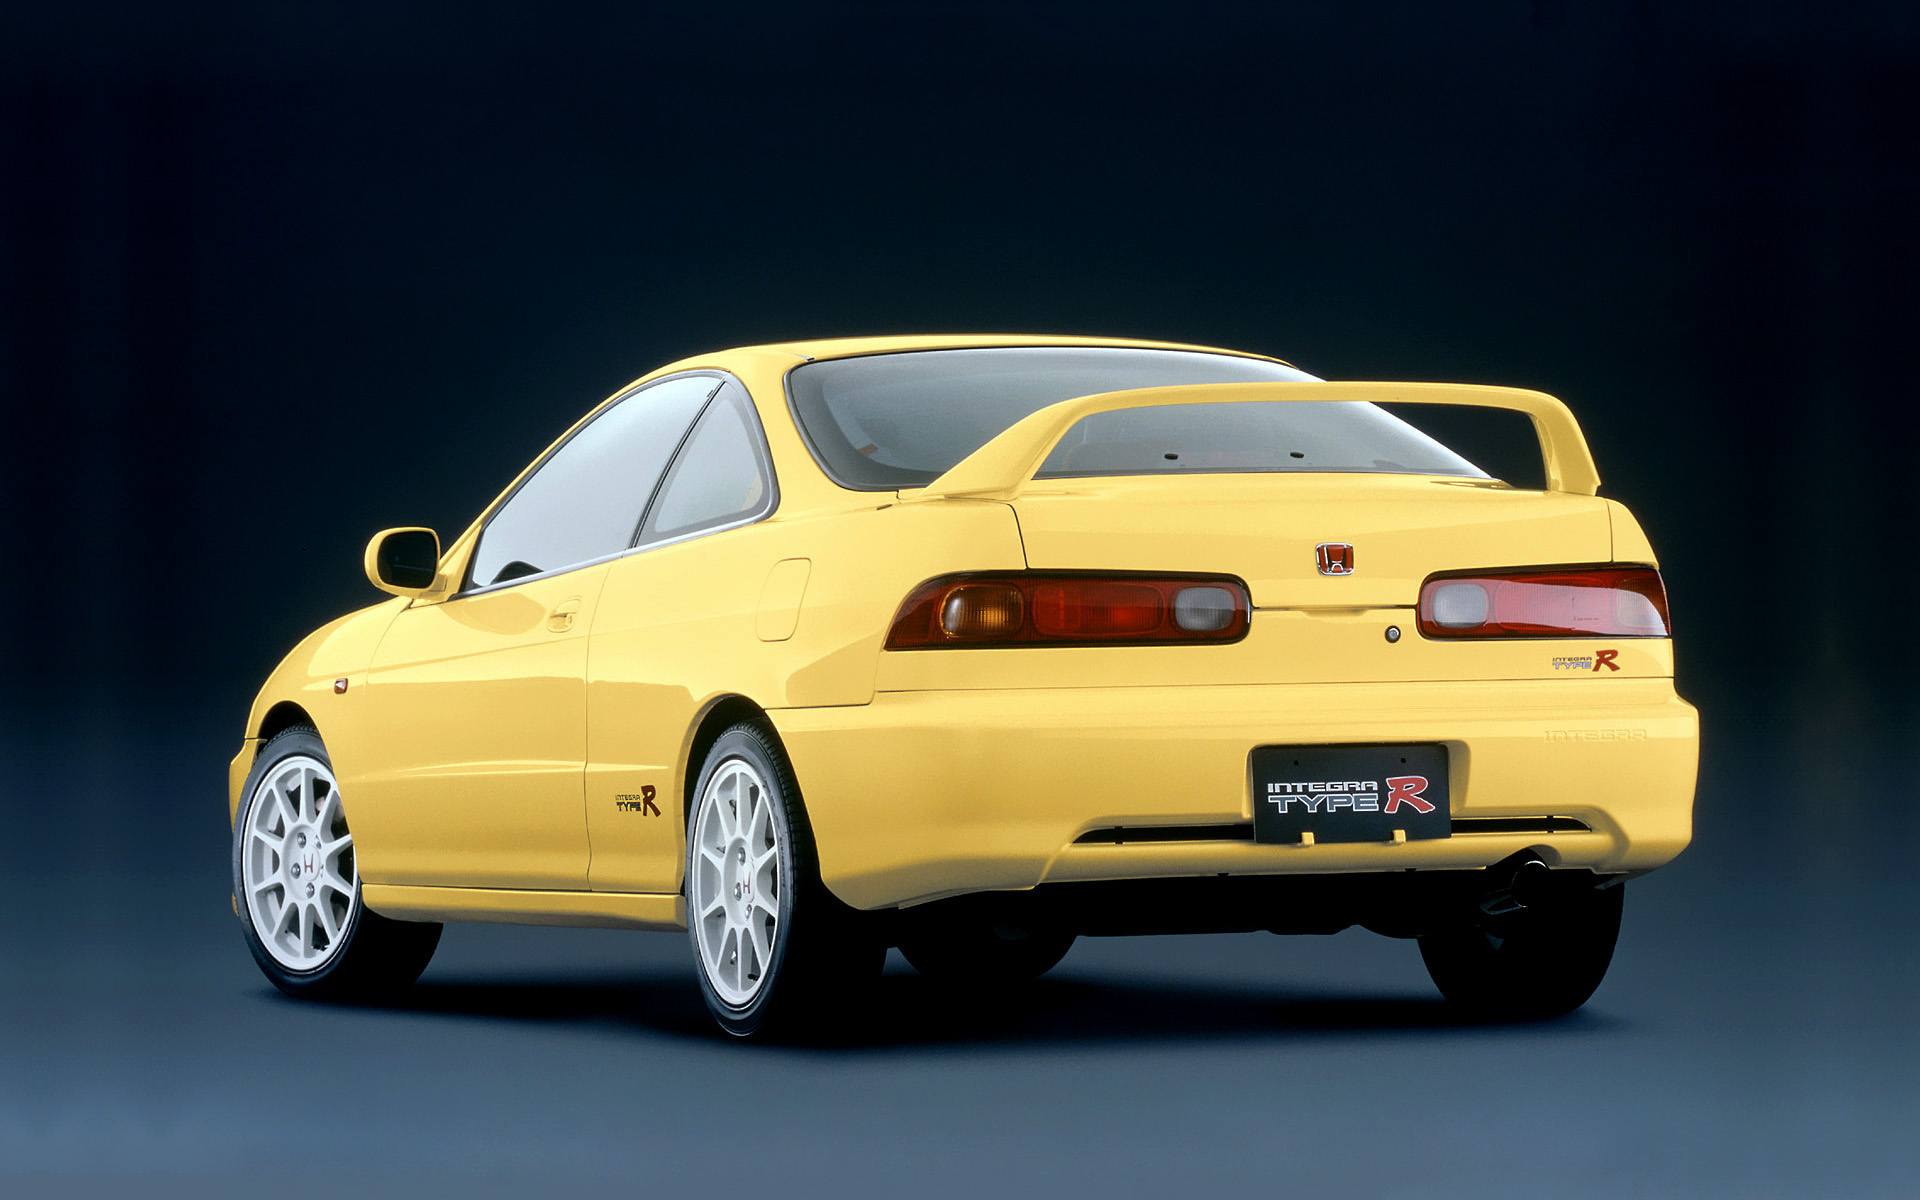  1998 Honda Integra Type R Wallpaper.